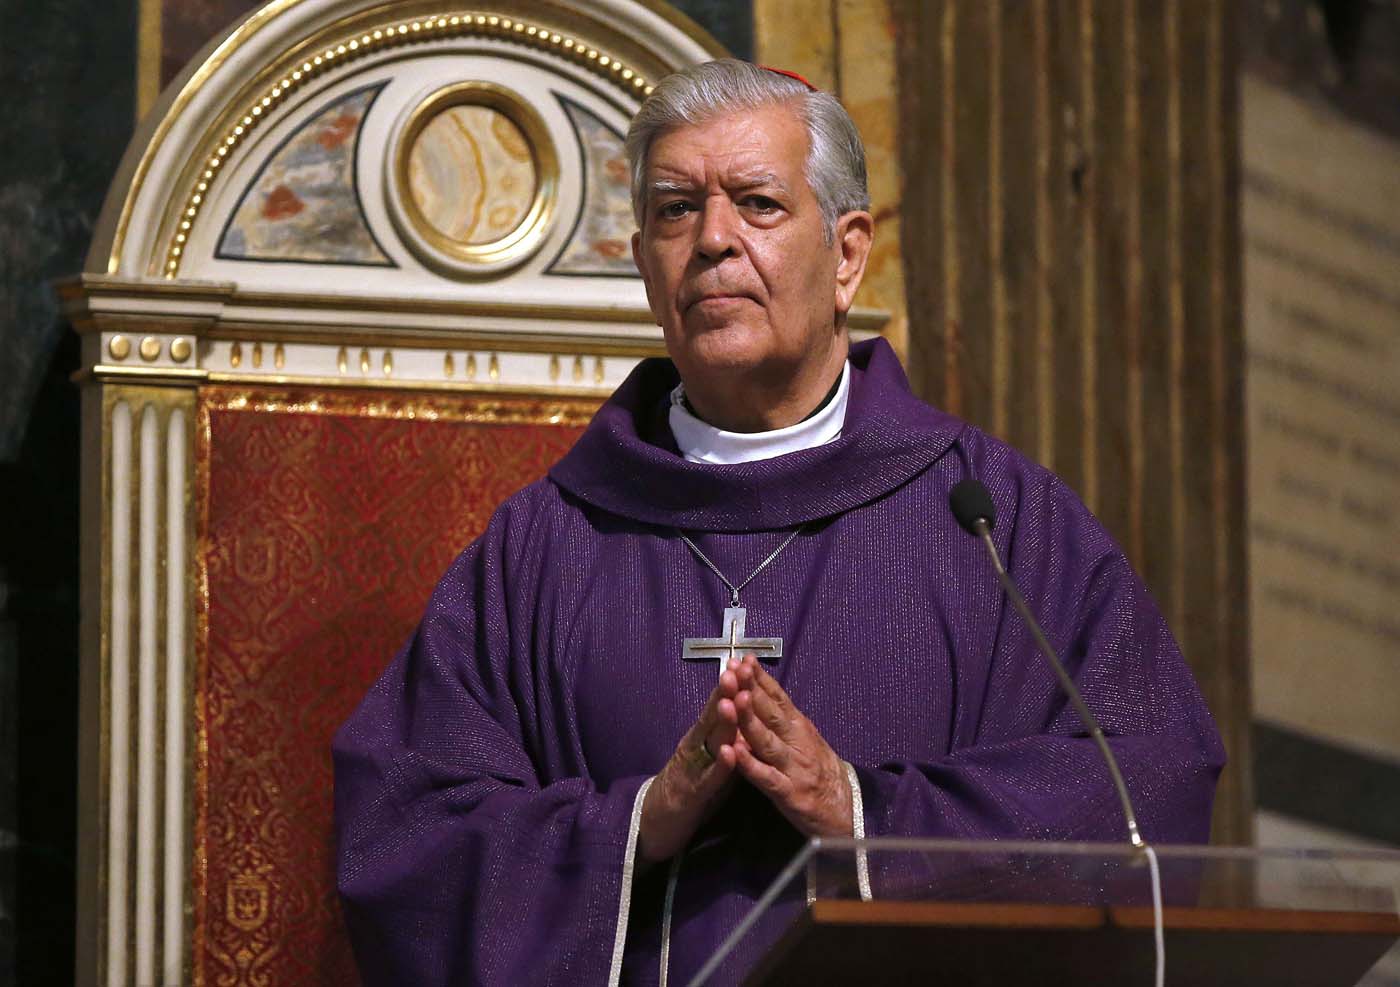 Arzobispo Urosa Savino responsabiliza al régimen de la grave crisis en el país